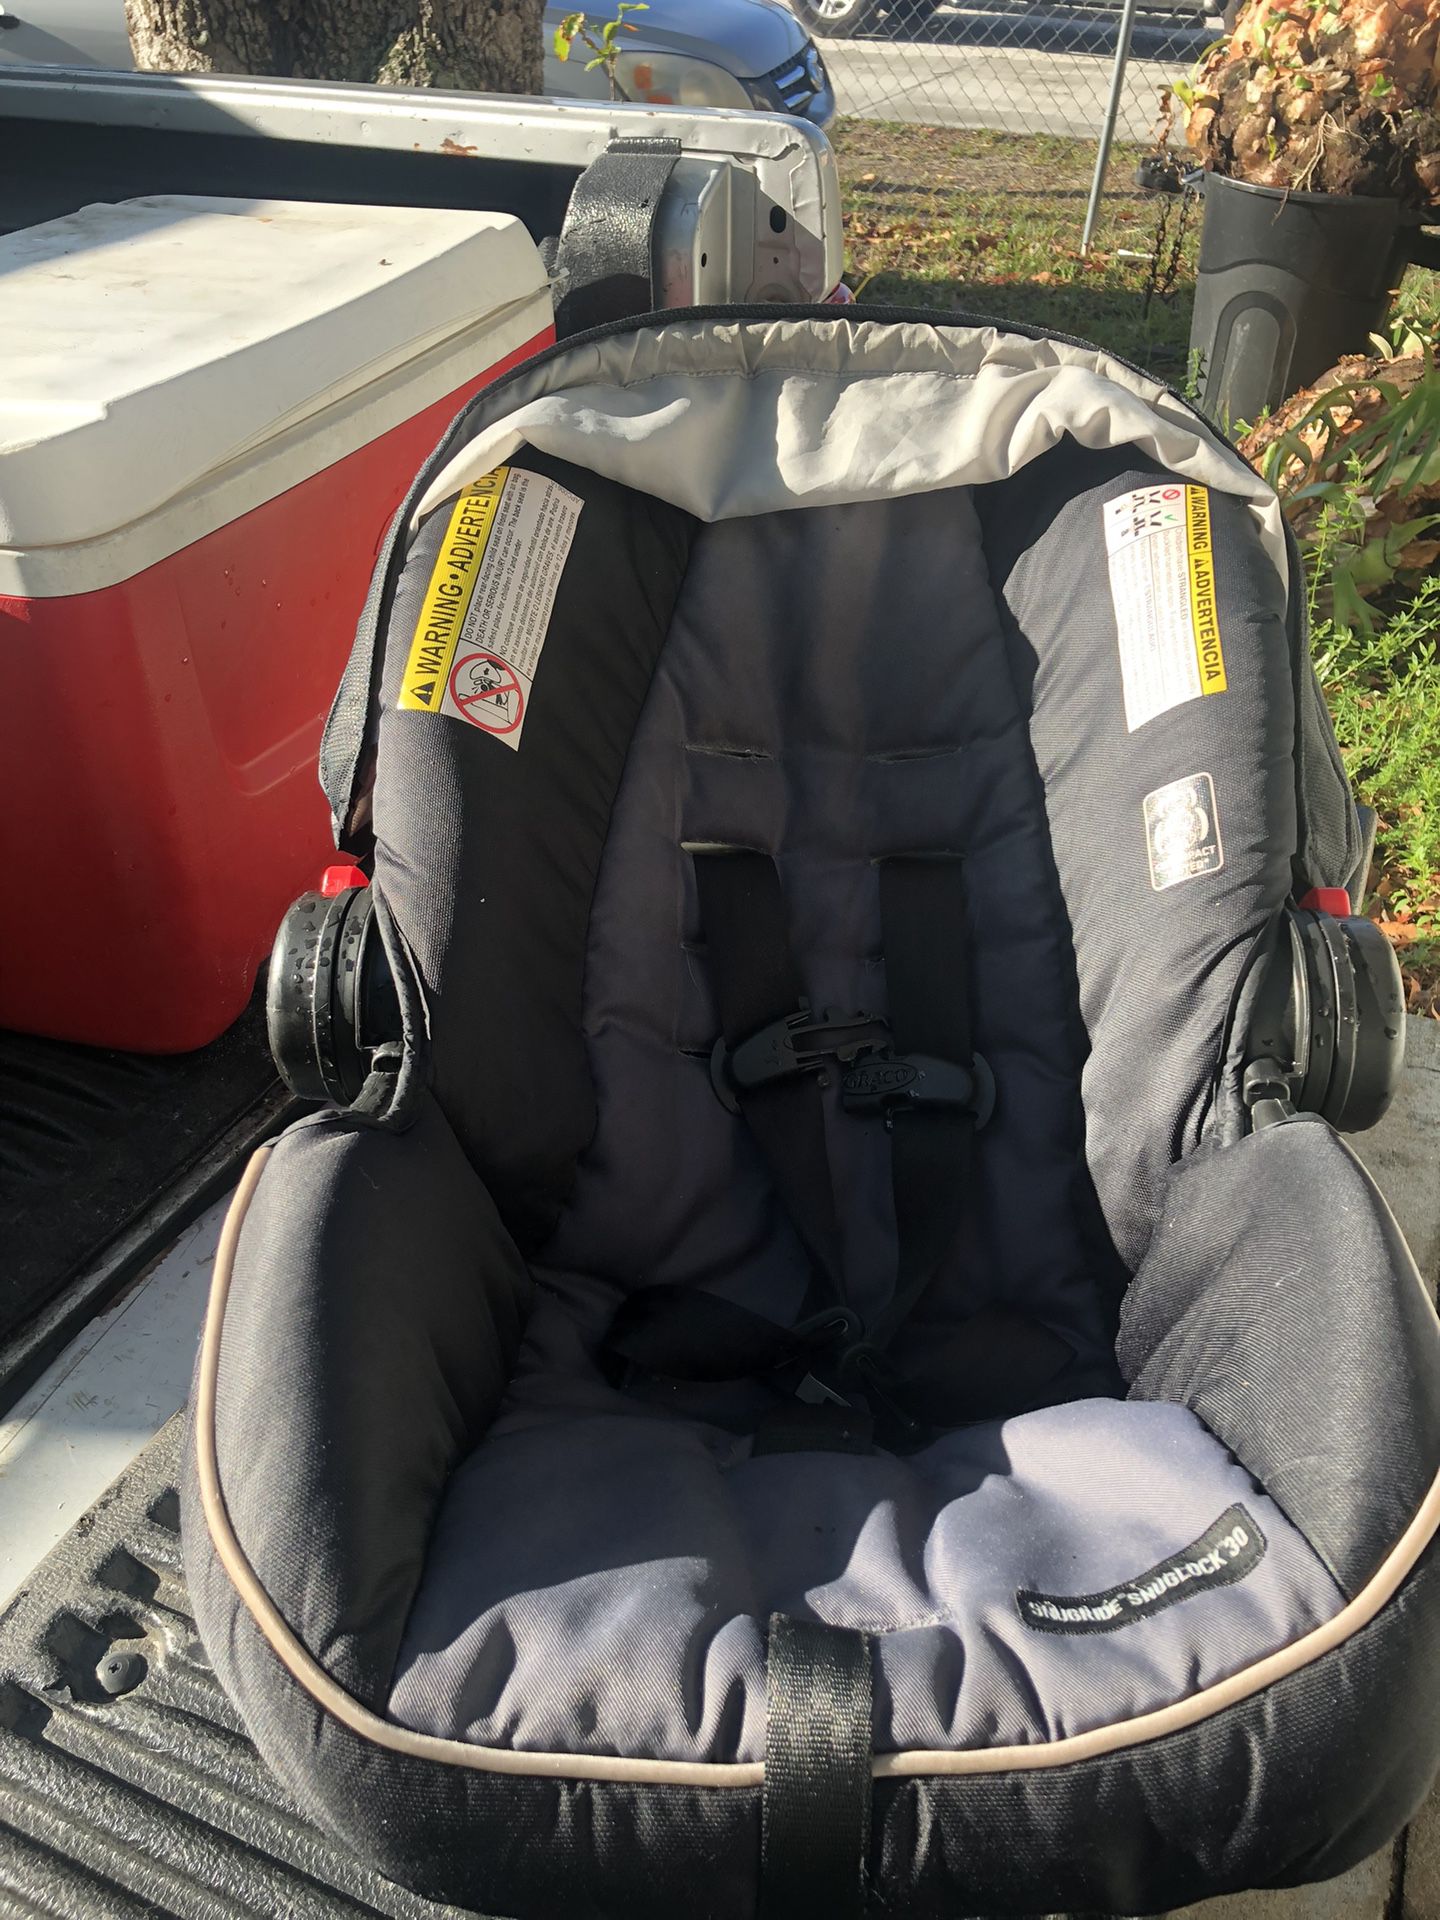 Free Baby Car Seat